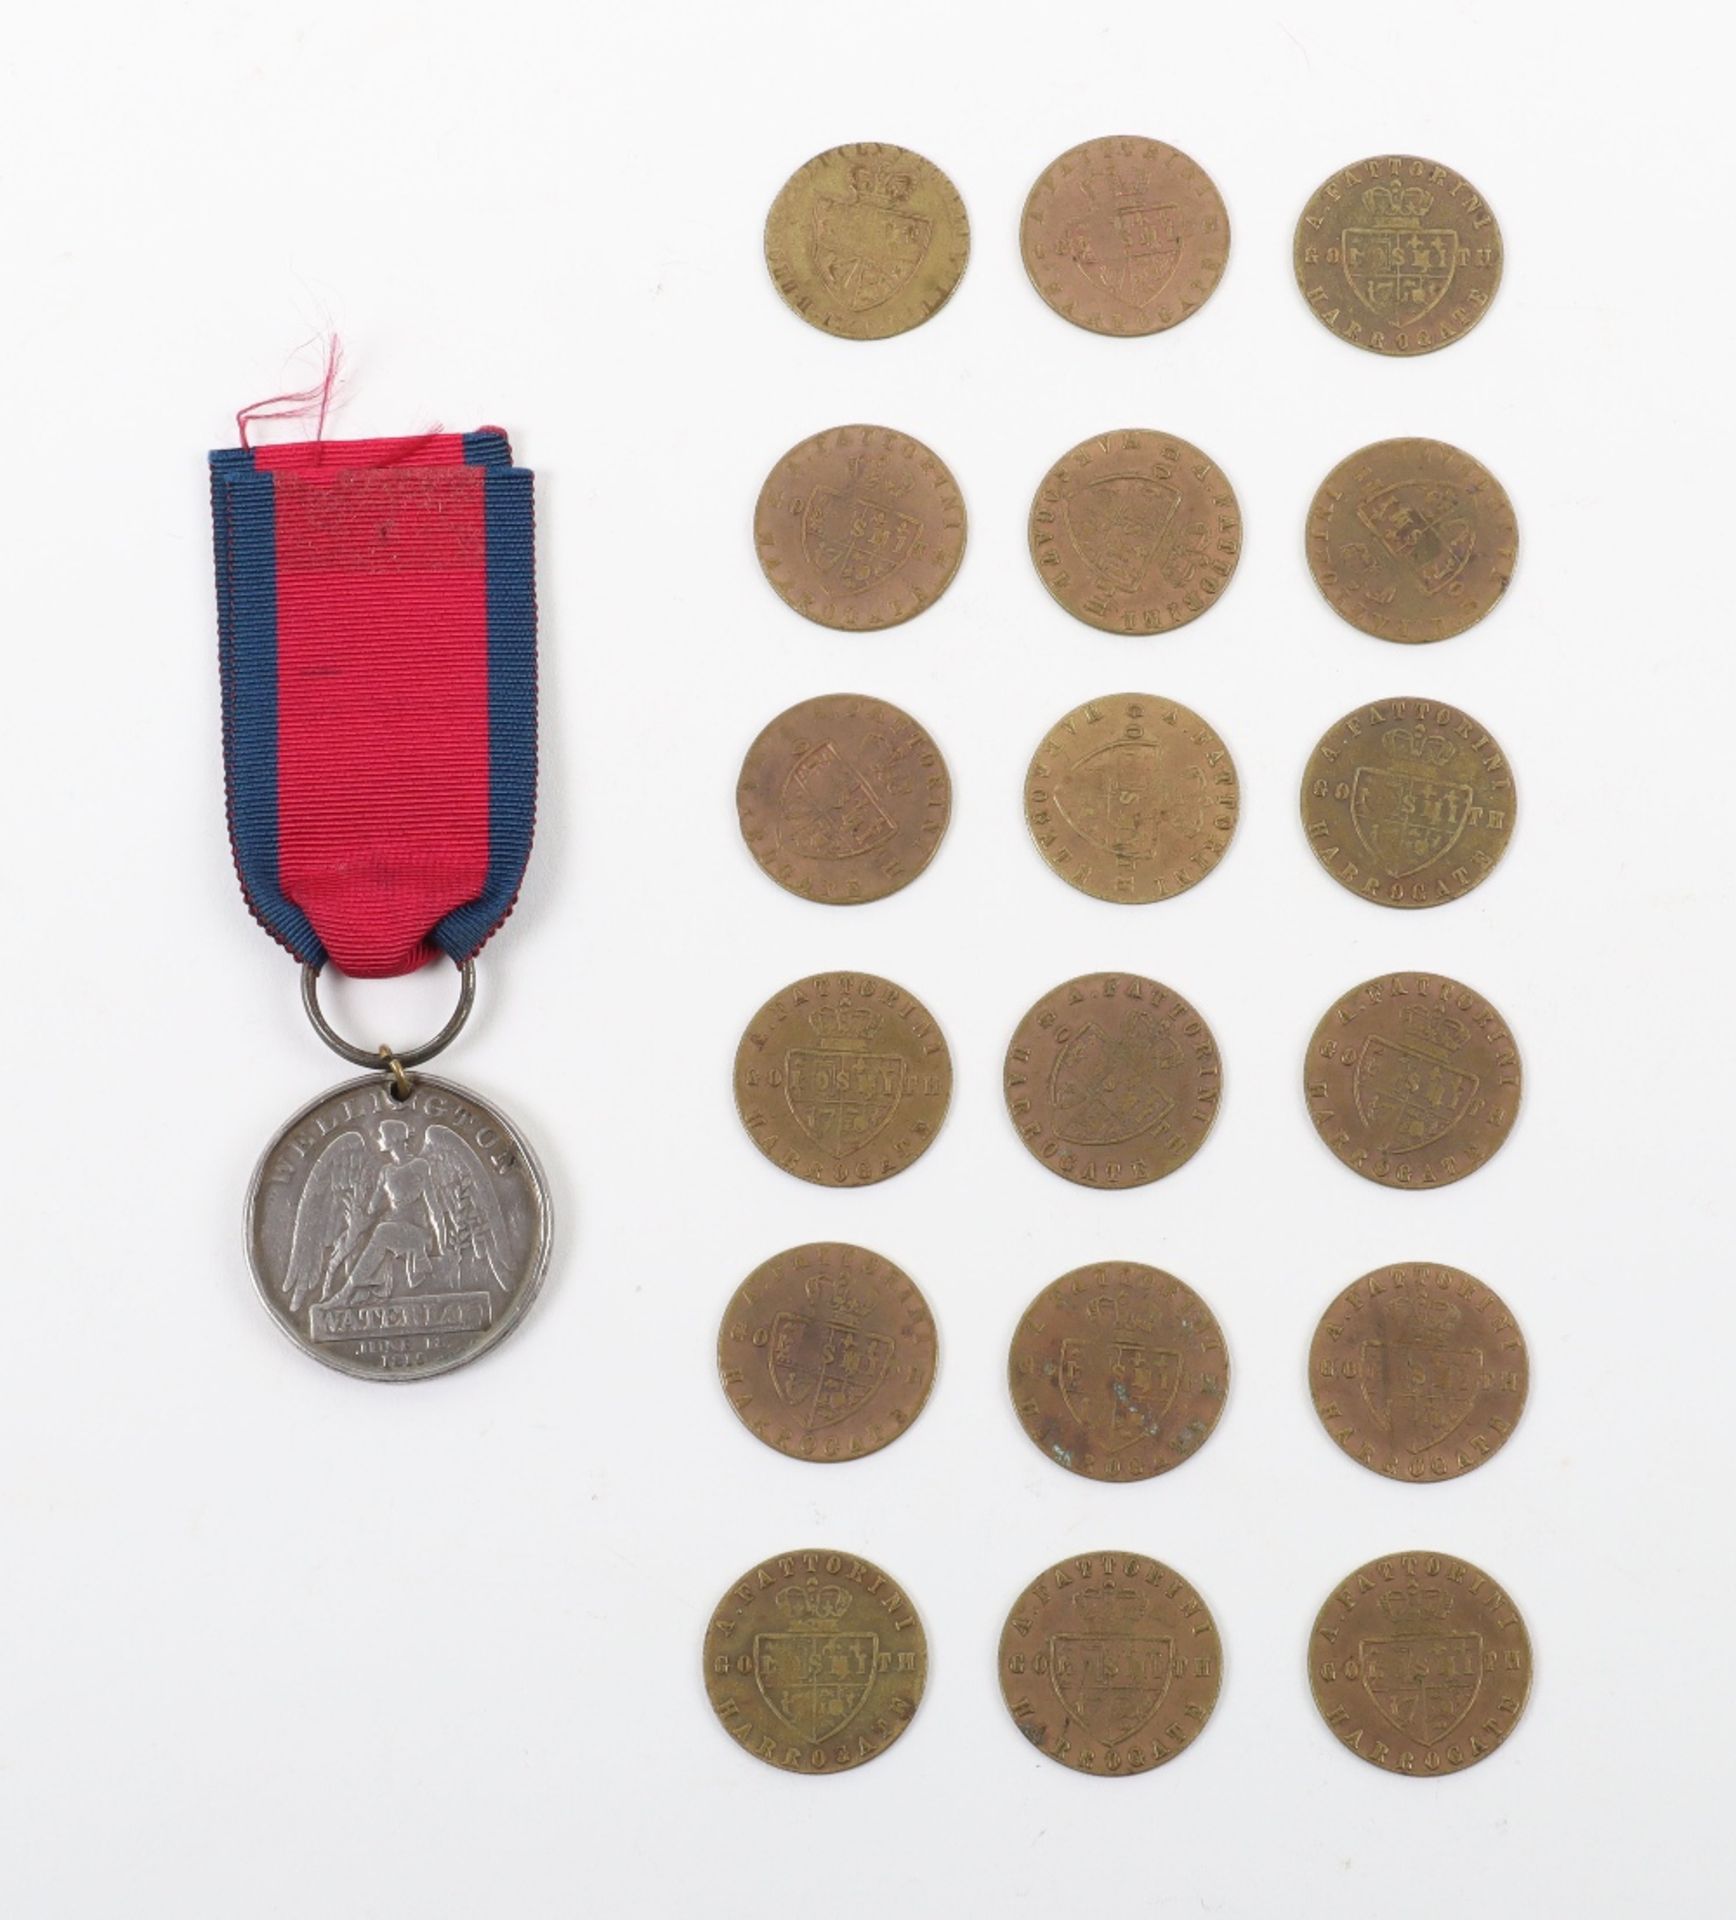 British 1815 Waterloo Medal - Image 3 of 7